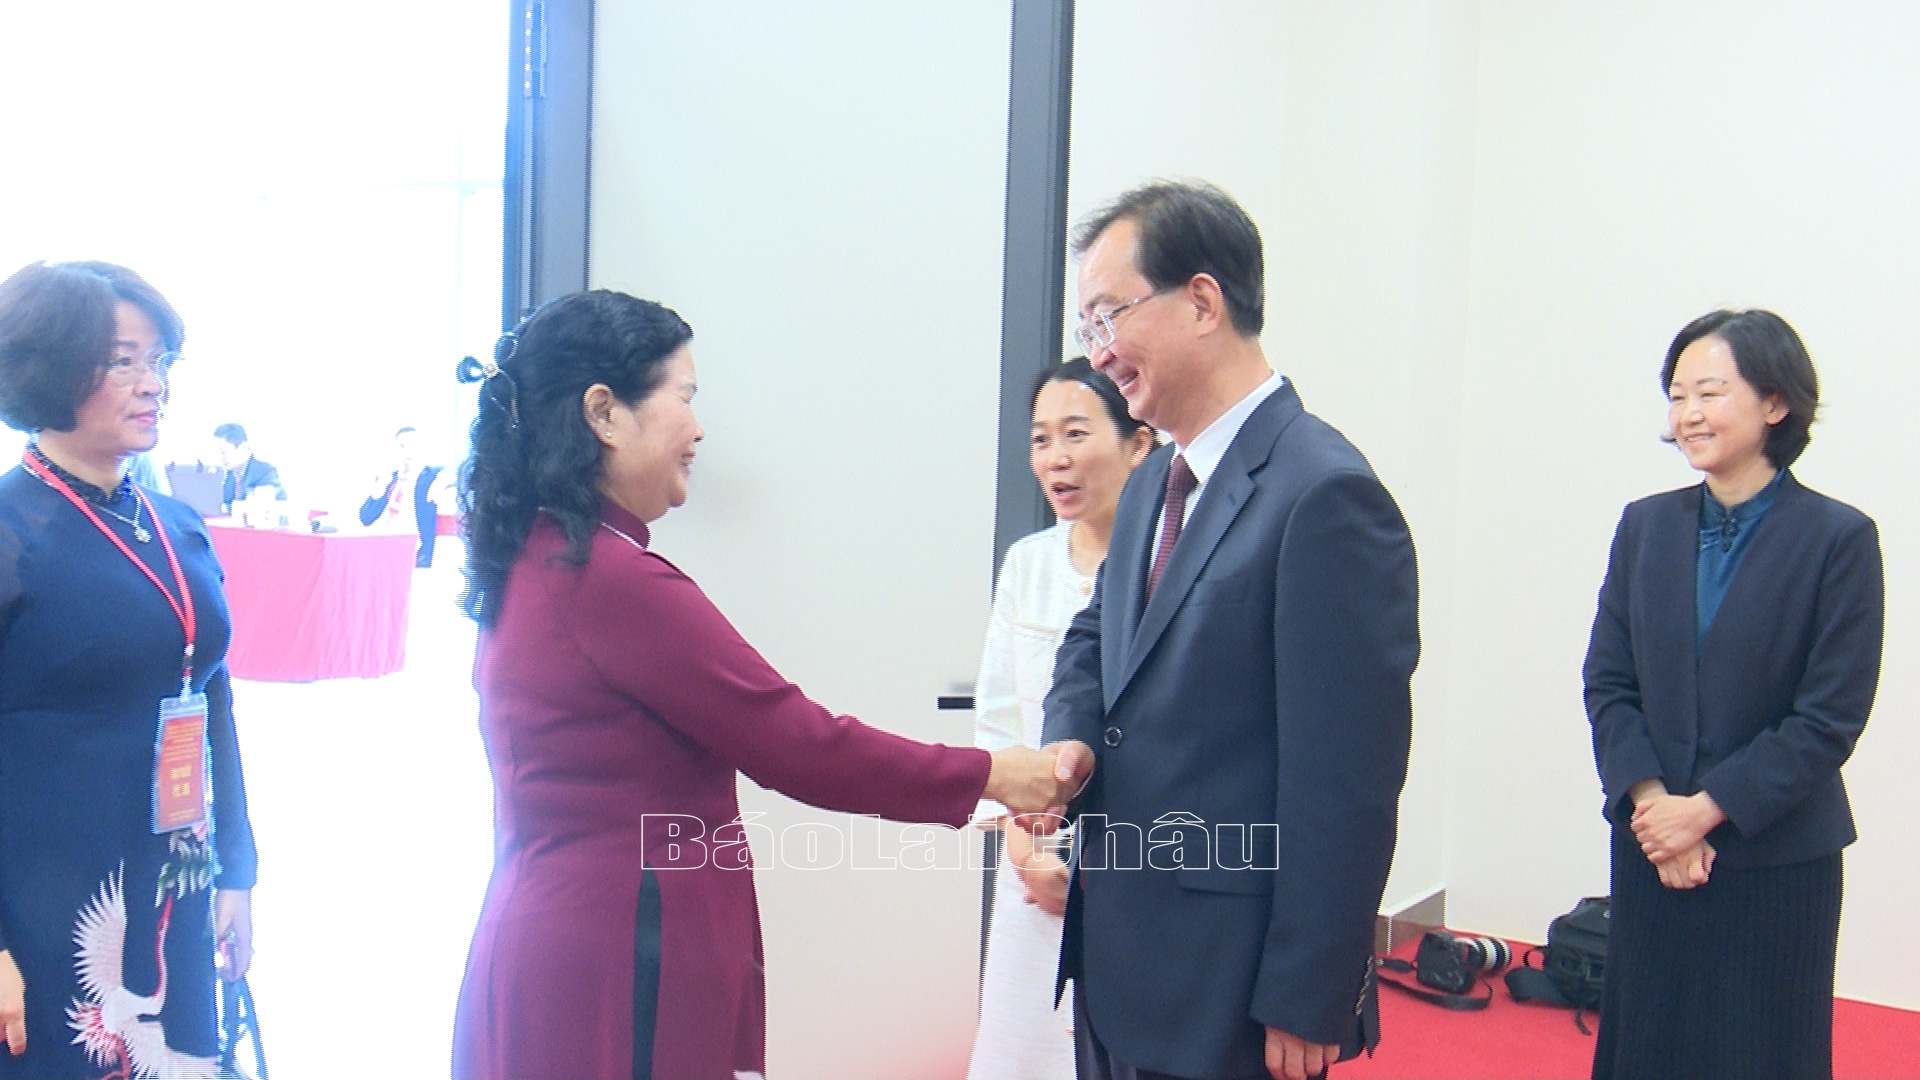 Bí thư Tỉnh ủy Lai Châu Giàng Páo Mỷ hội kiến với Bí thư Tỉnh ủy Vân Nam (Trung Quốc) Vương Ninh 